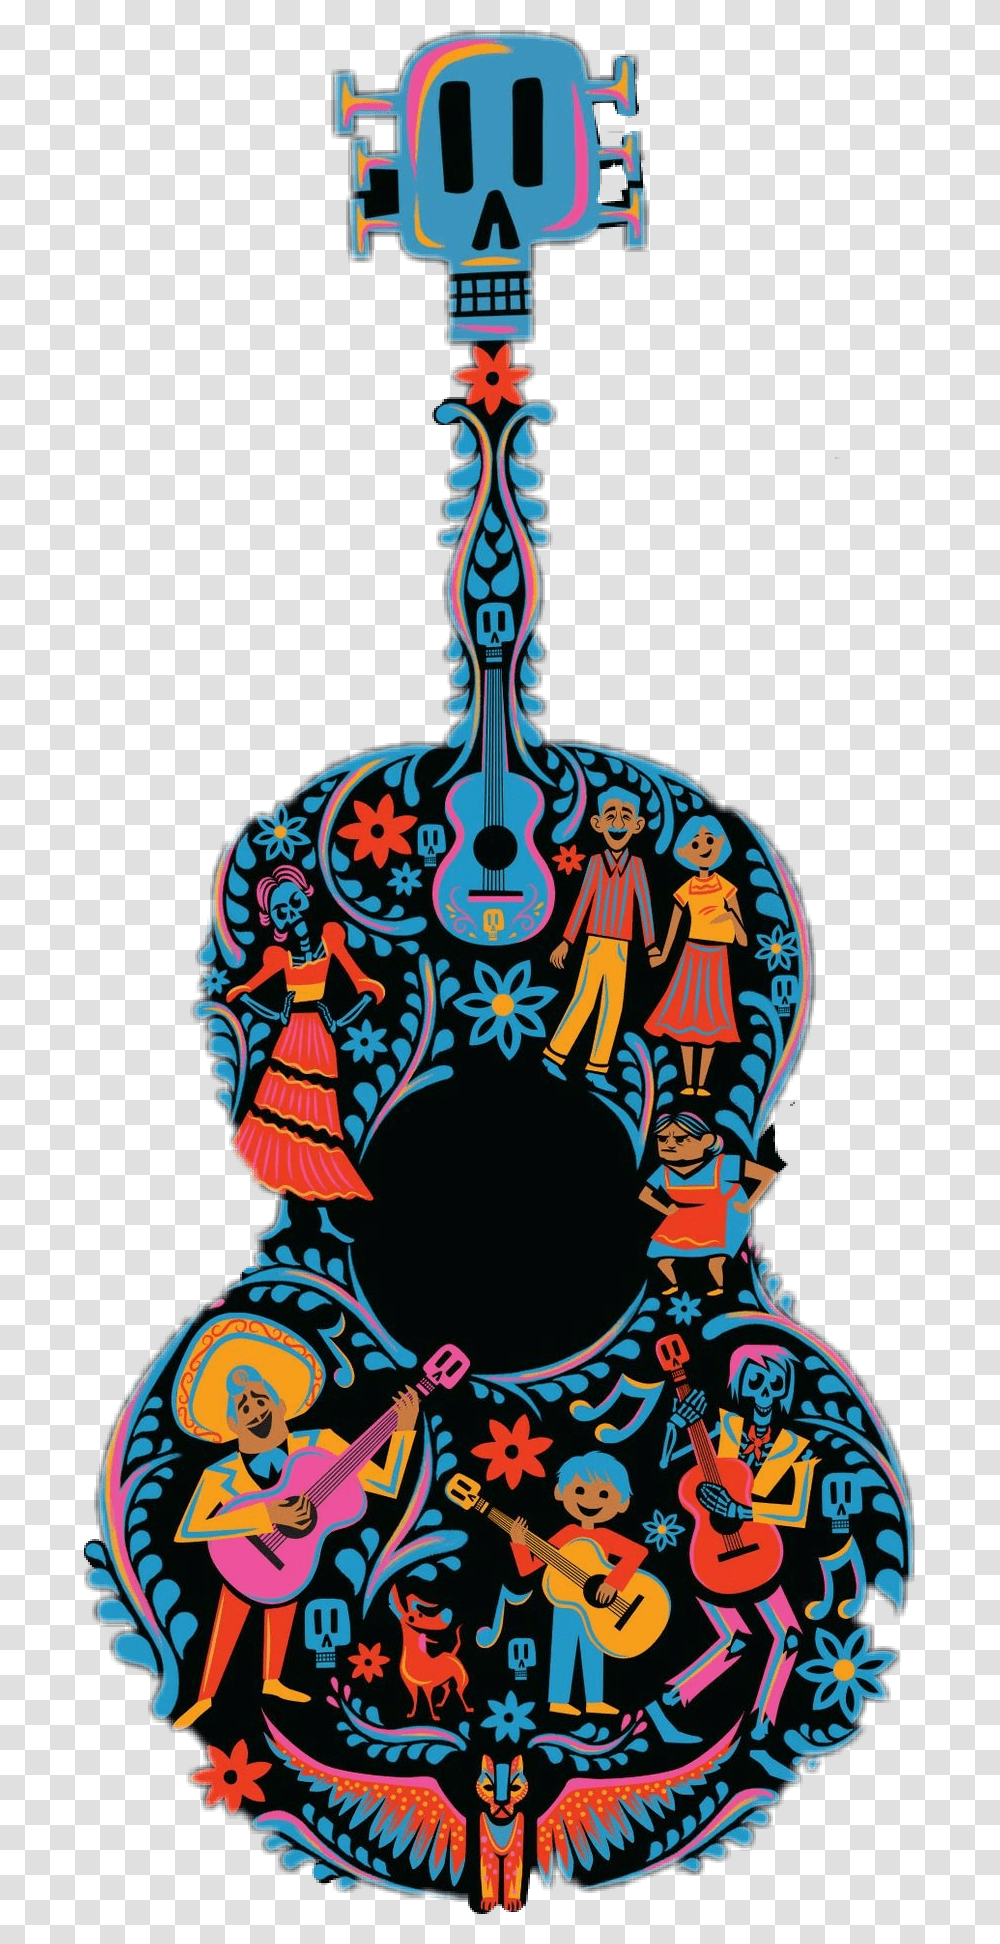 Coco Guitarra Disney Pixar Mexico, Doodle, Drawing, Person Transparent Png